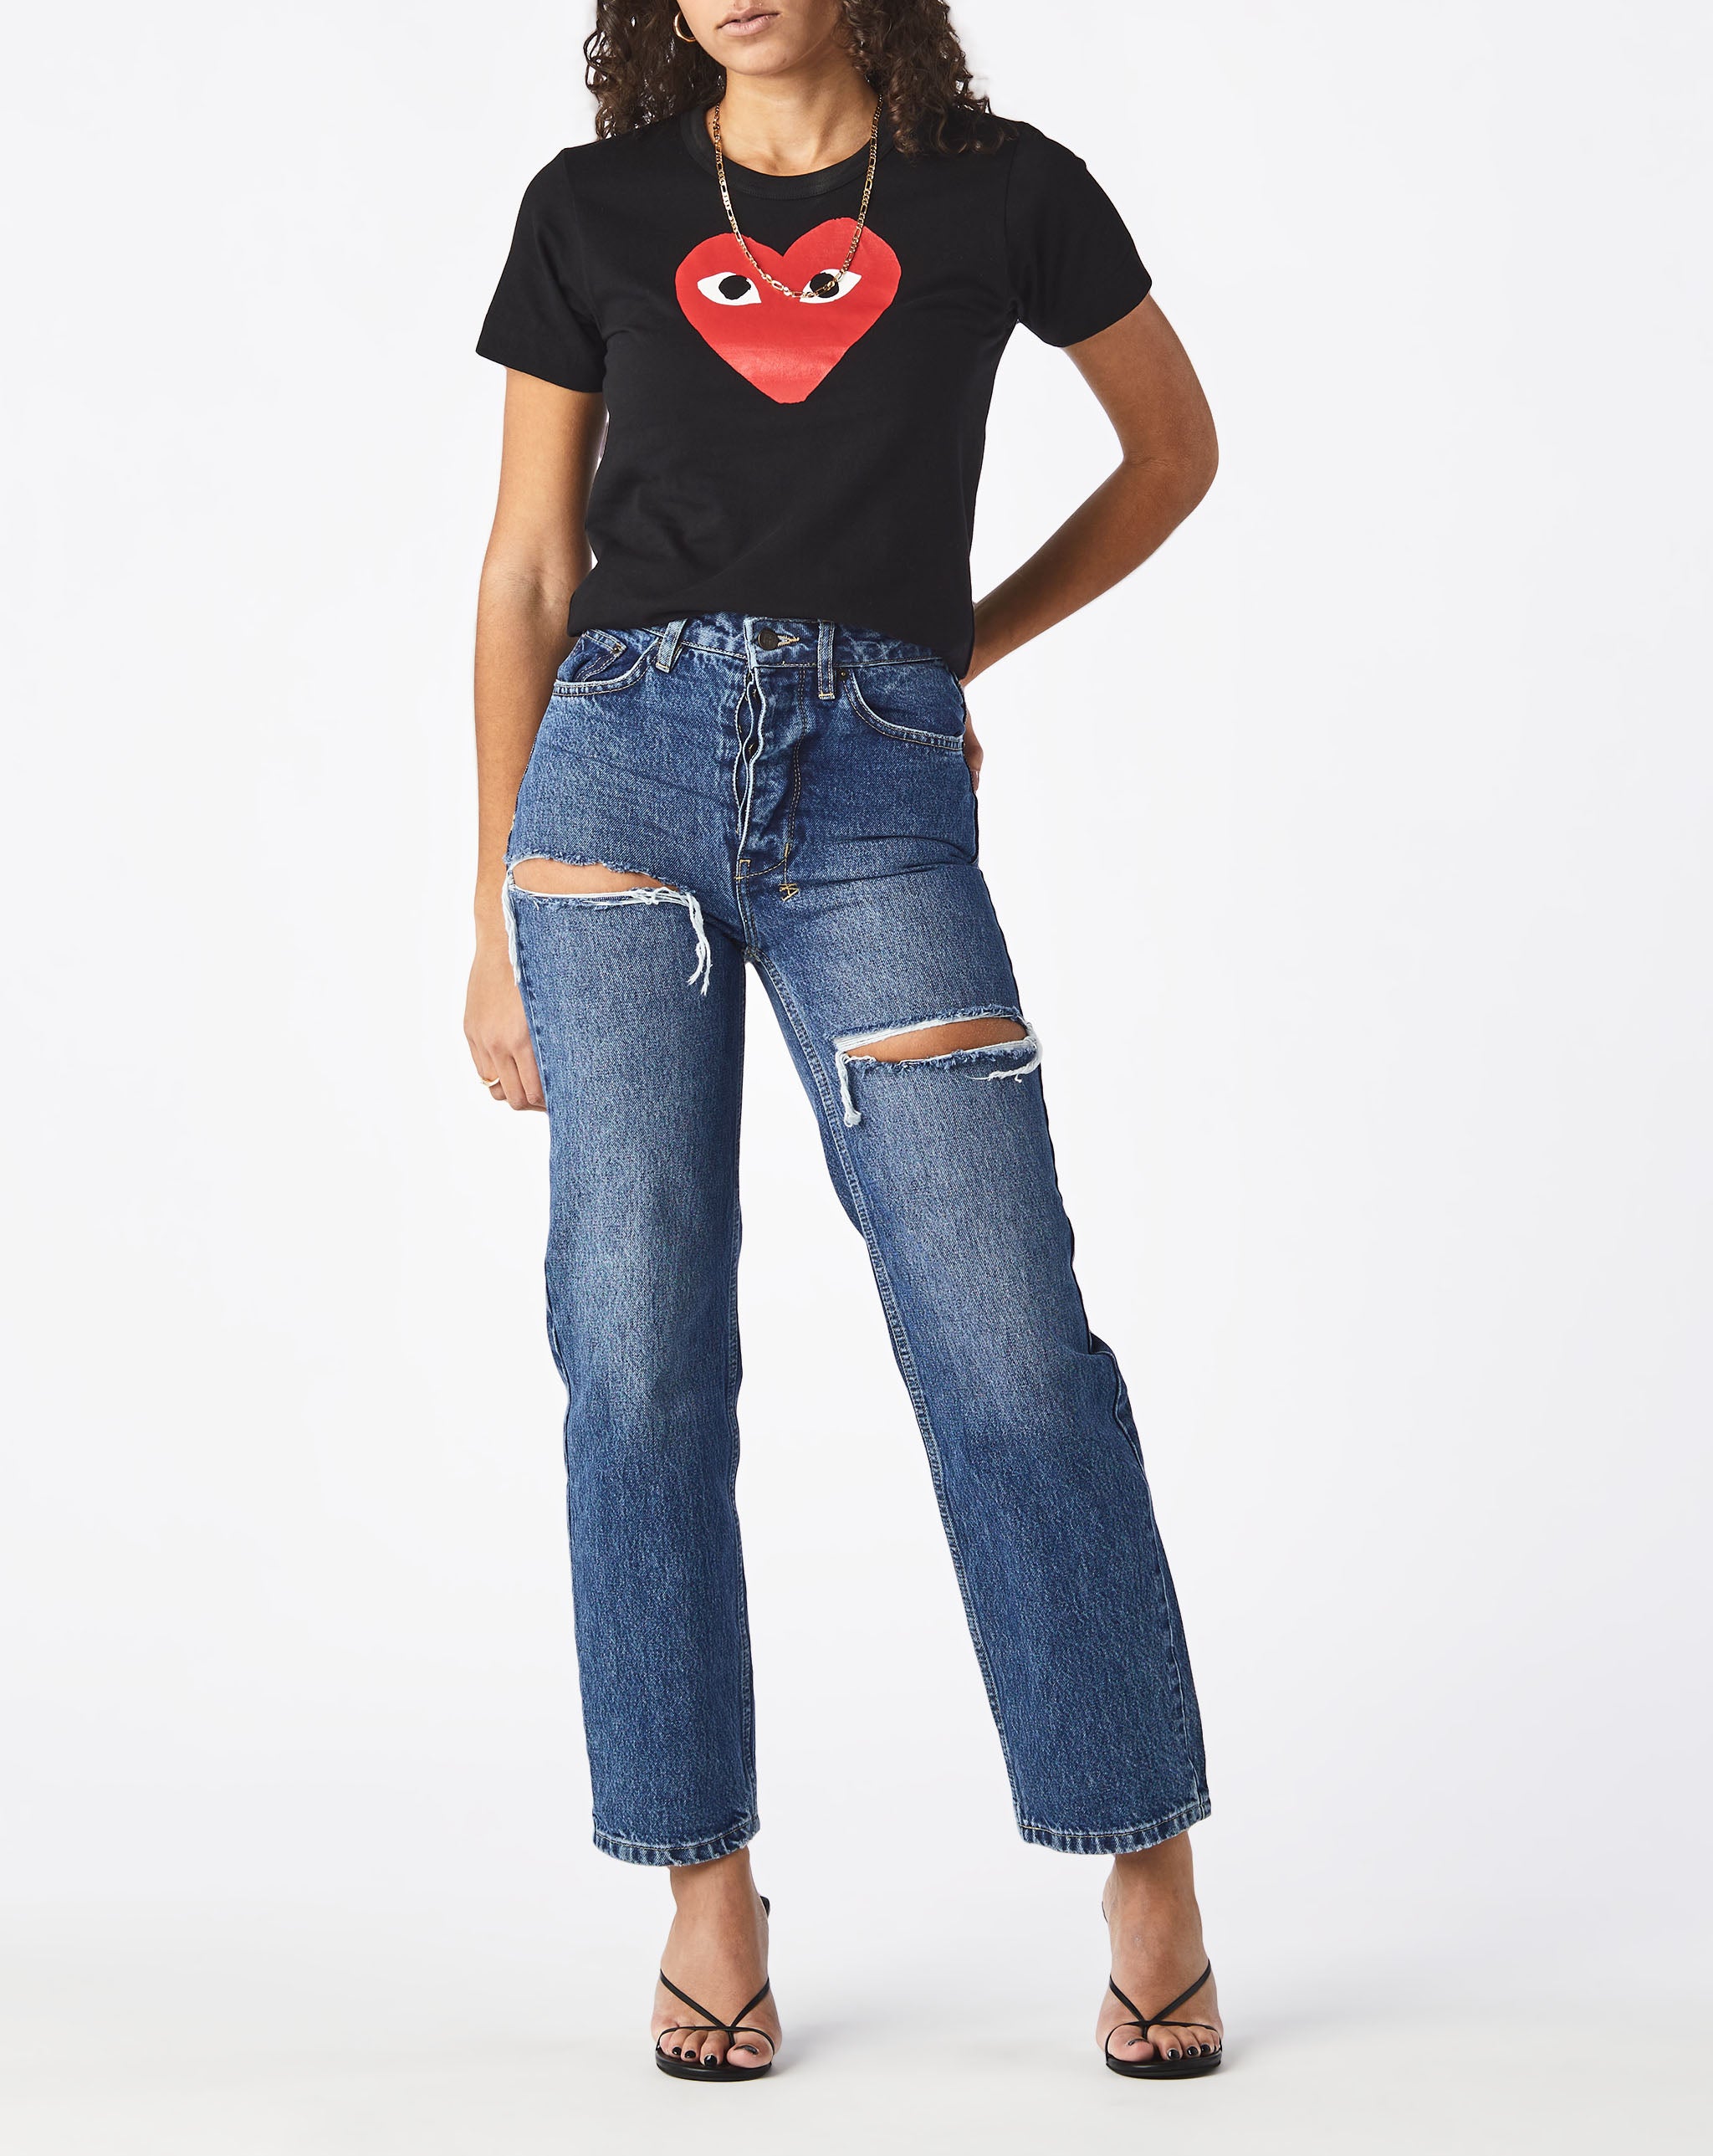 Womens Double Camo Heart T-Shirt Women's Play T-Shirt  - Cheap Urlfreeze Jordan outlet